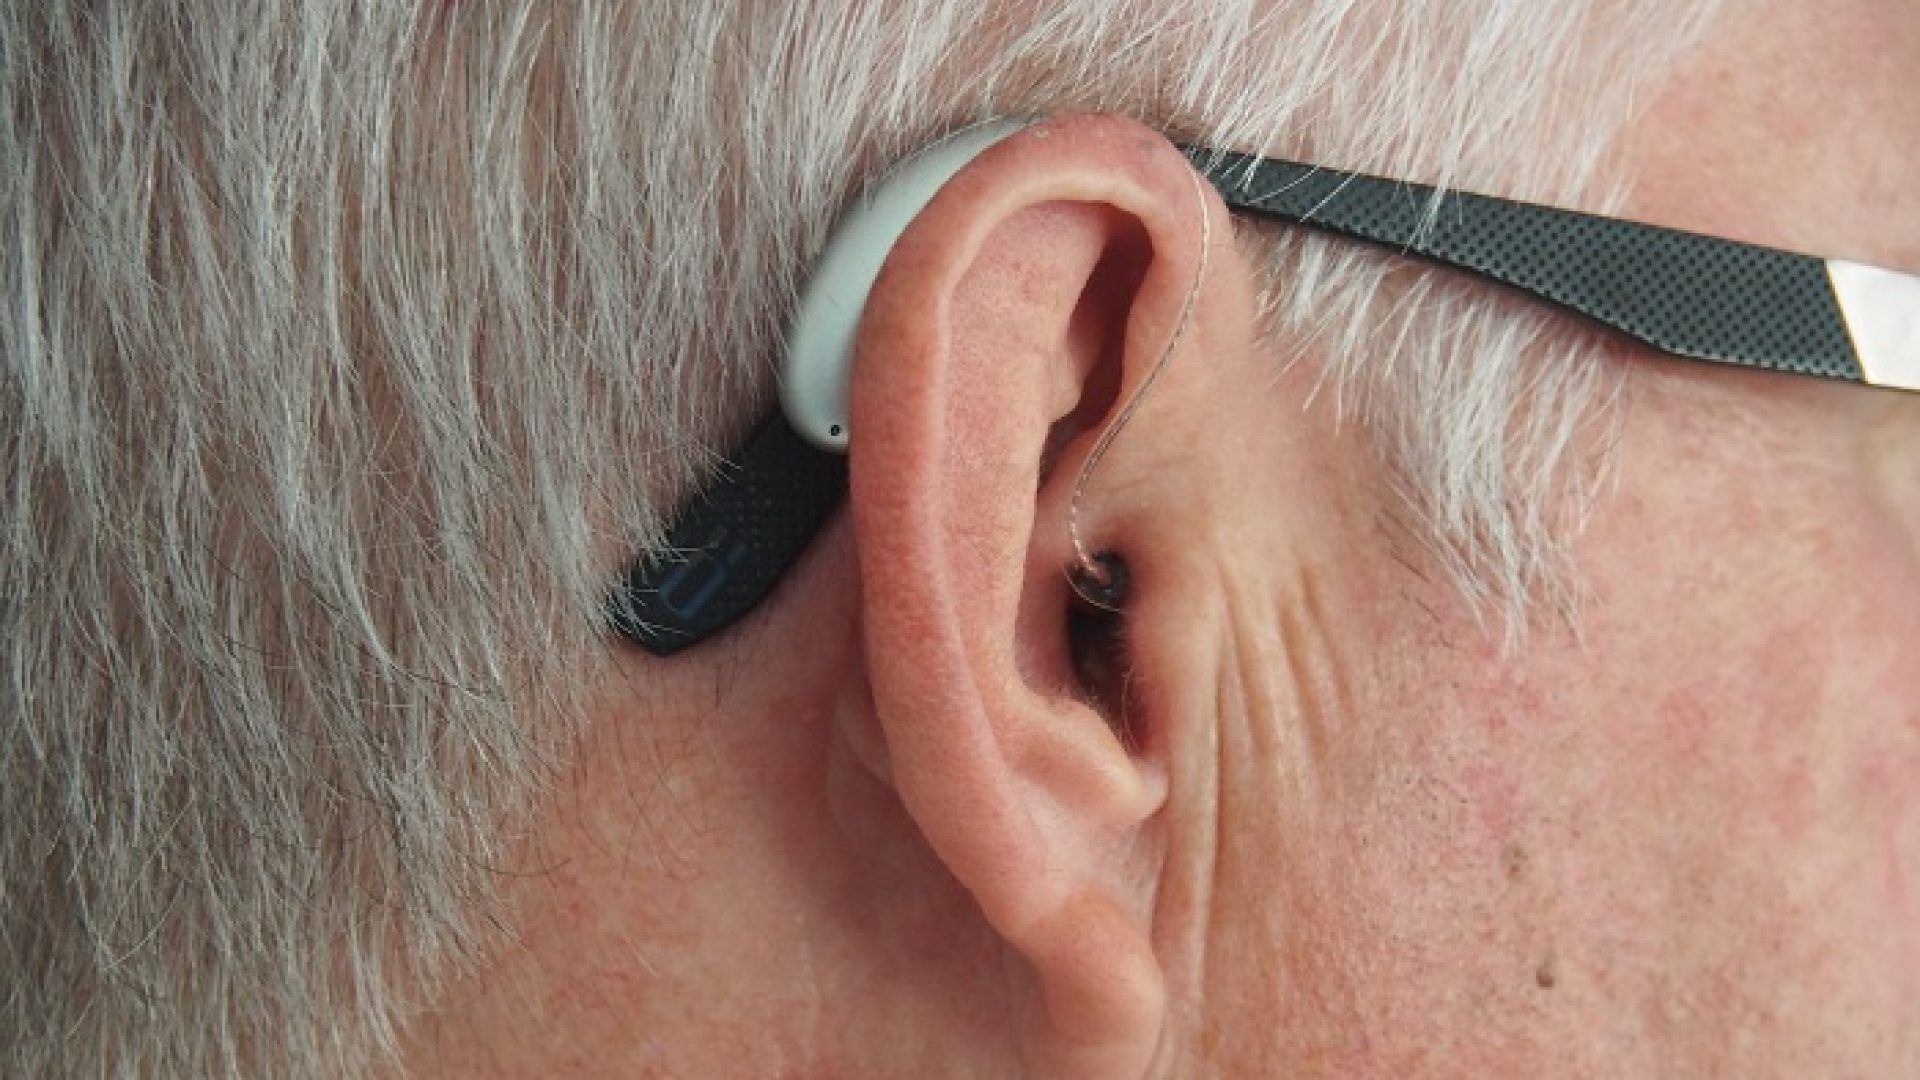 demenza-udito-apparecchi-acustici